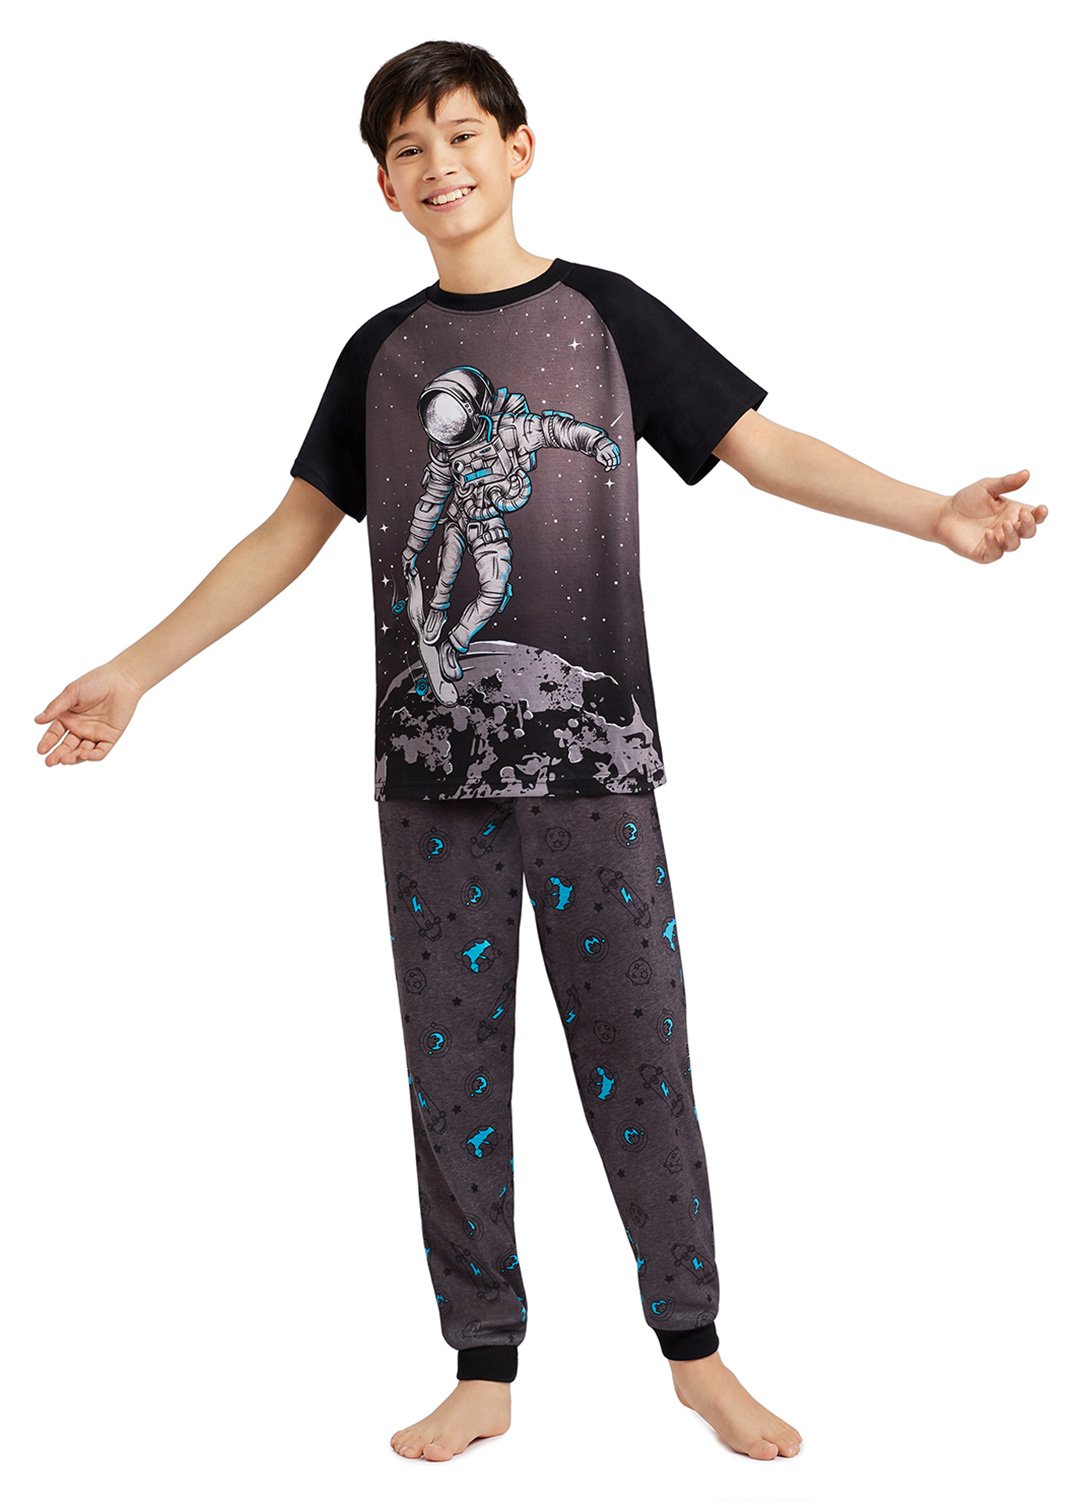 Boy with 2-Piece Pajama Set Astronaut on Skateboard